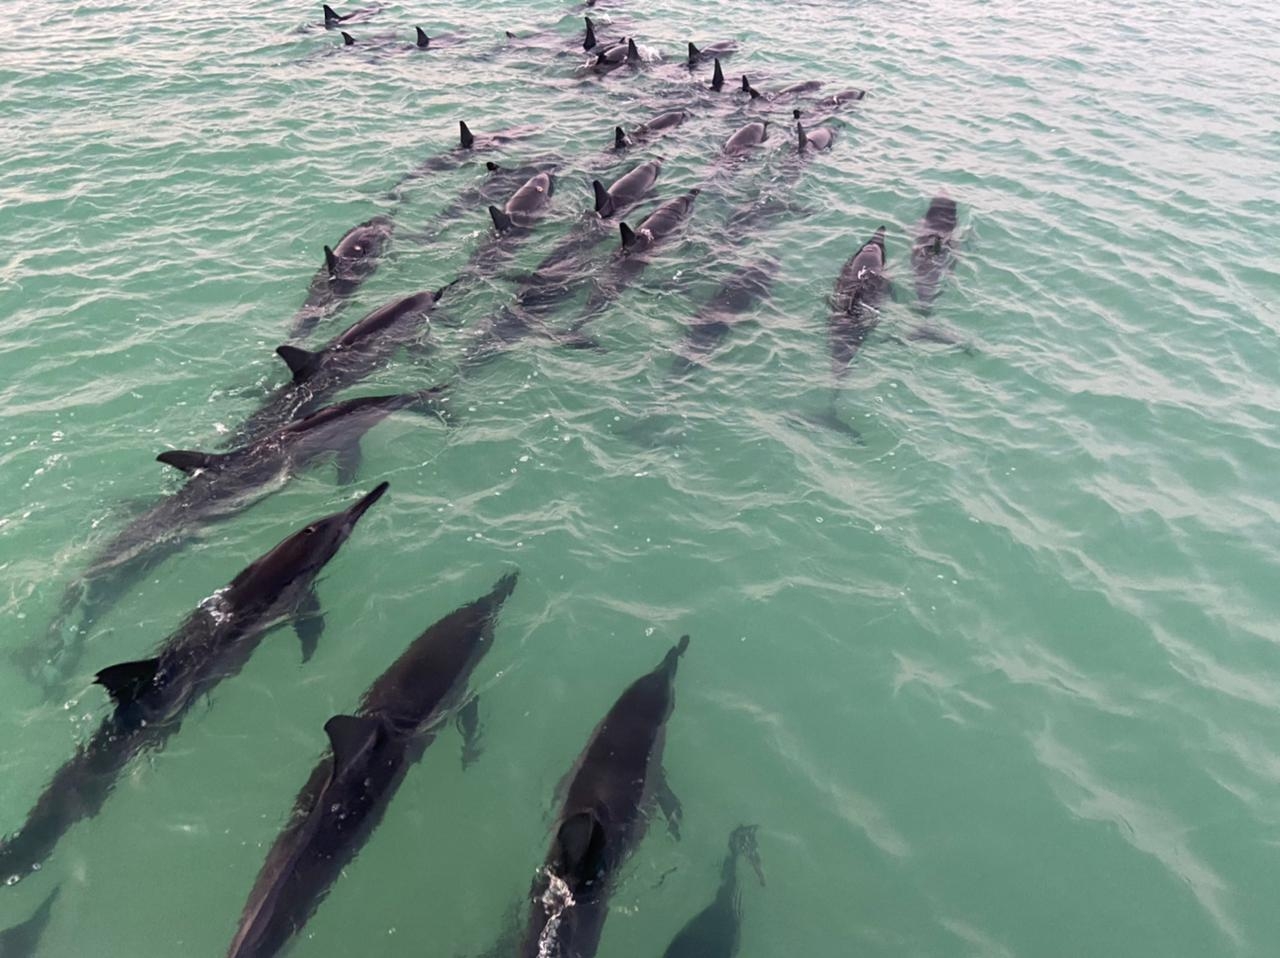 El grupo de delfines fue avistado cerca de la orilla de Punta Mosquito y de la isla de Holbox, en Quintana Roo